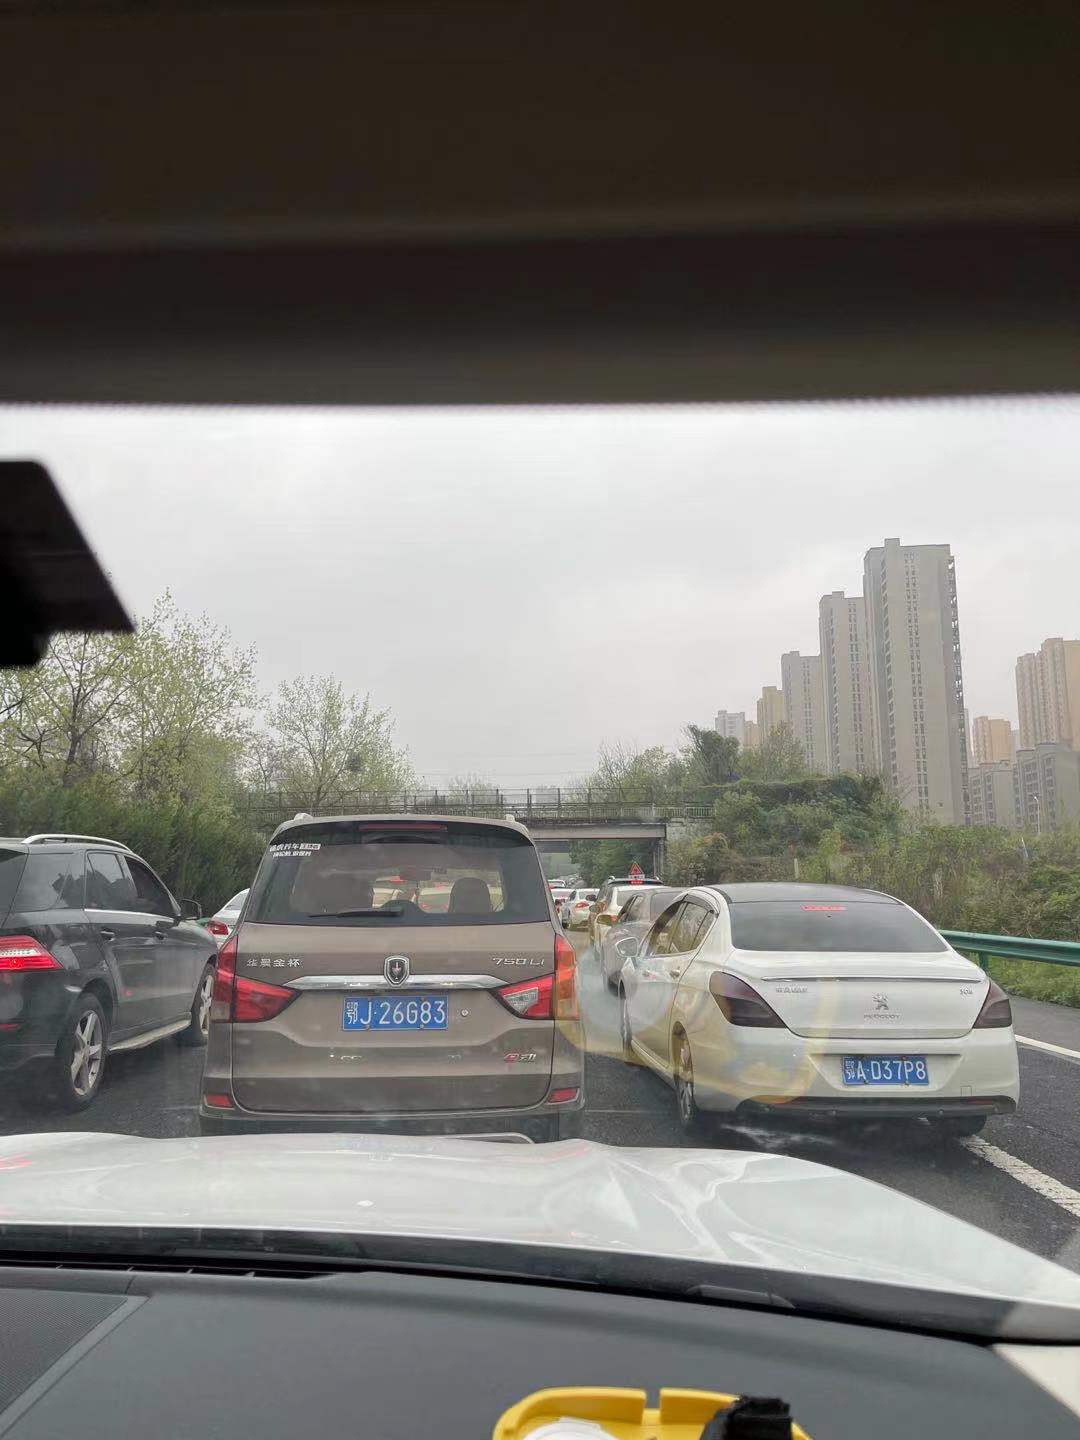 67武汉东出口上关豹高速路段拥堵